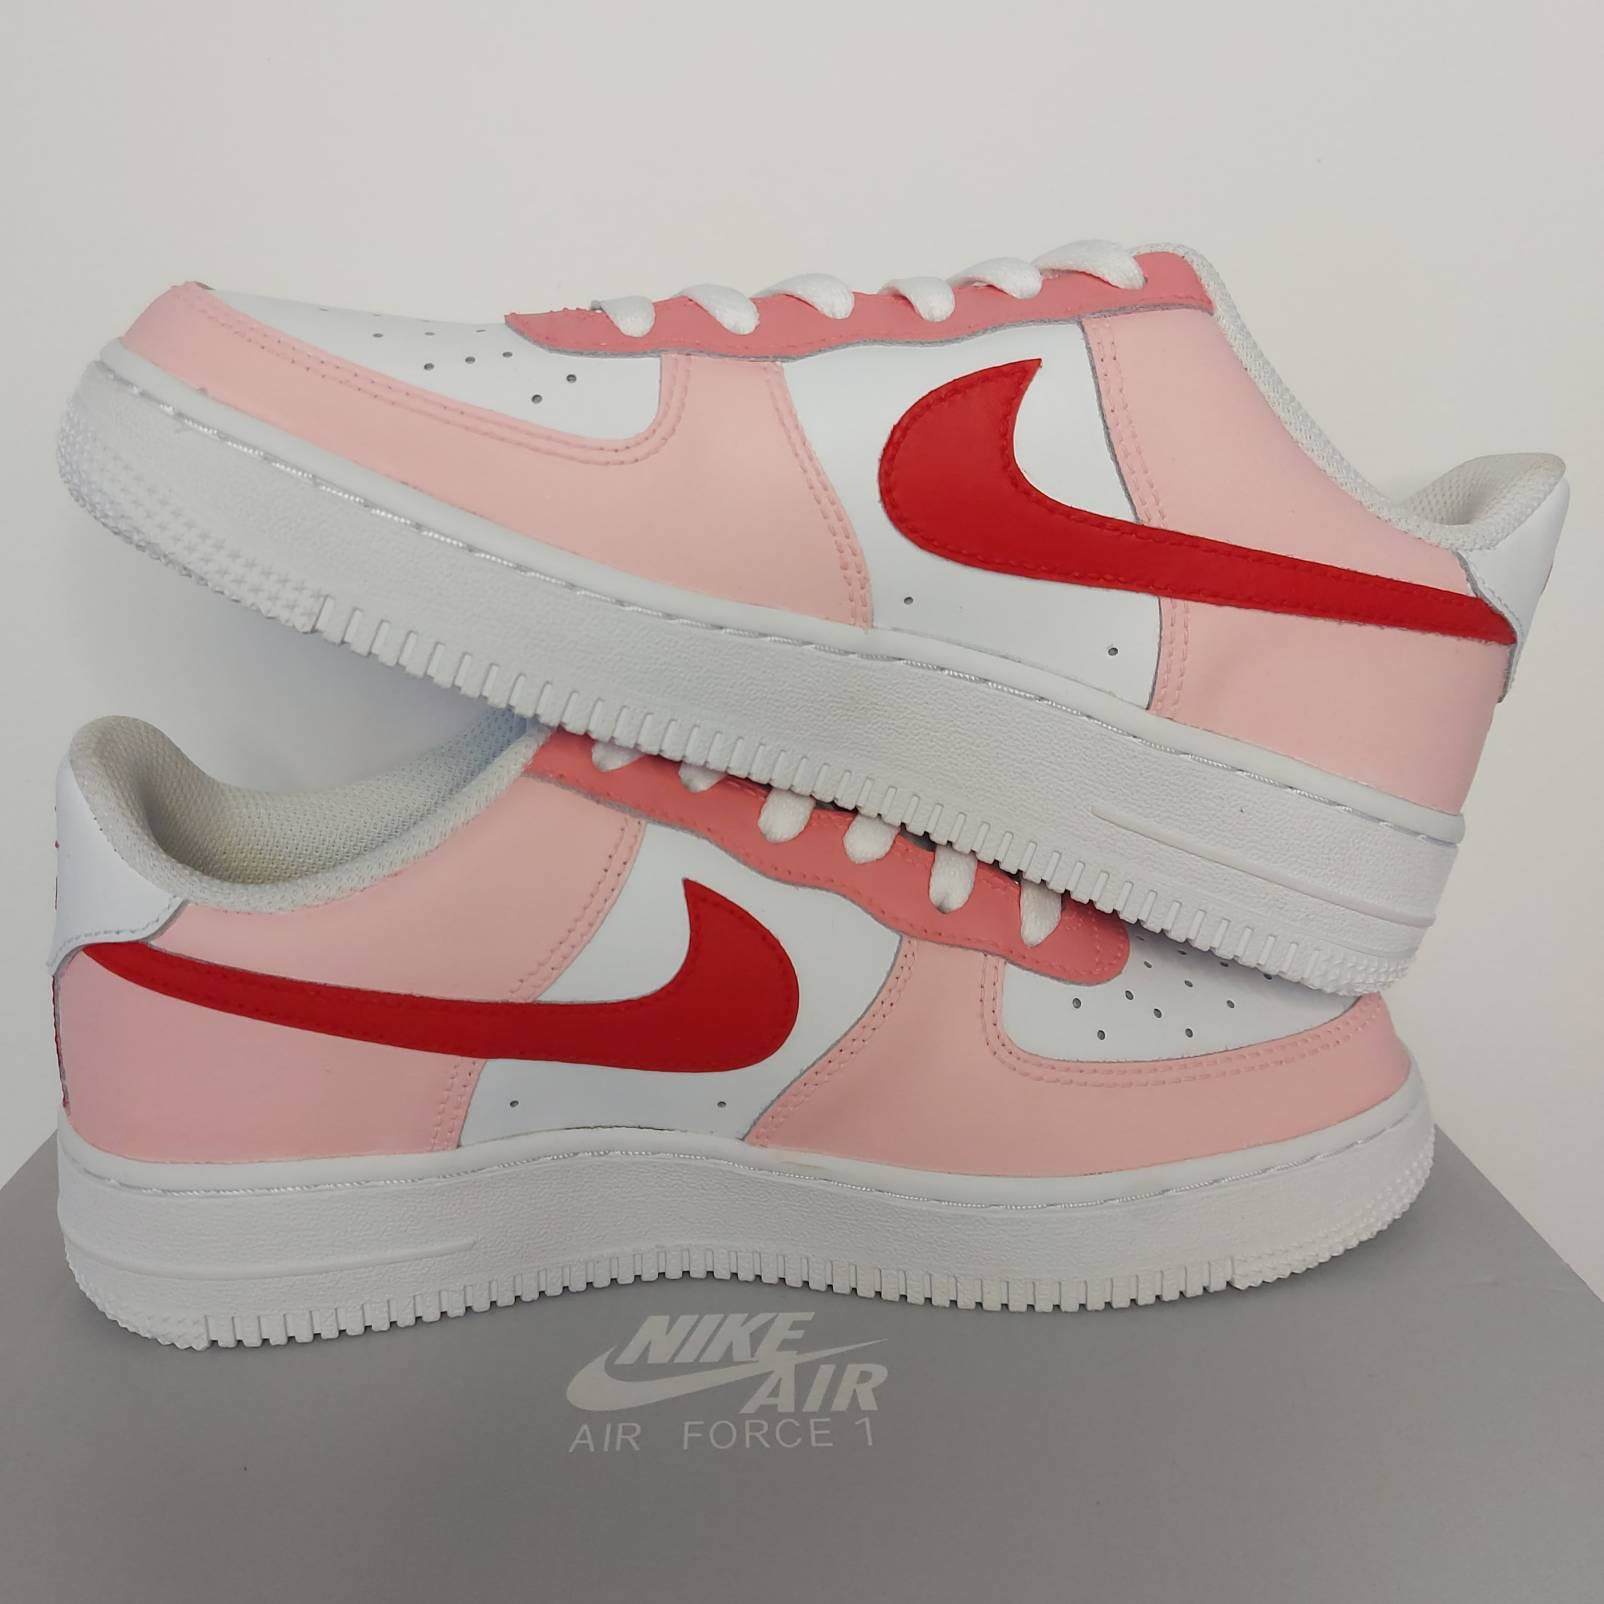 Nike Air Force 1 Pink - Etsy Hong Kong